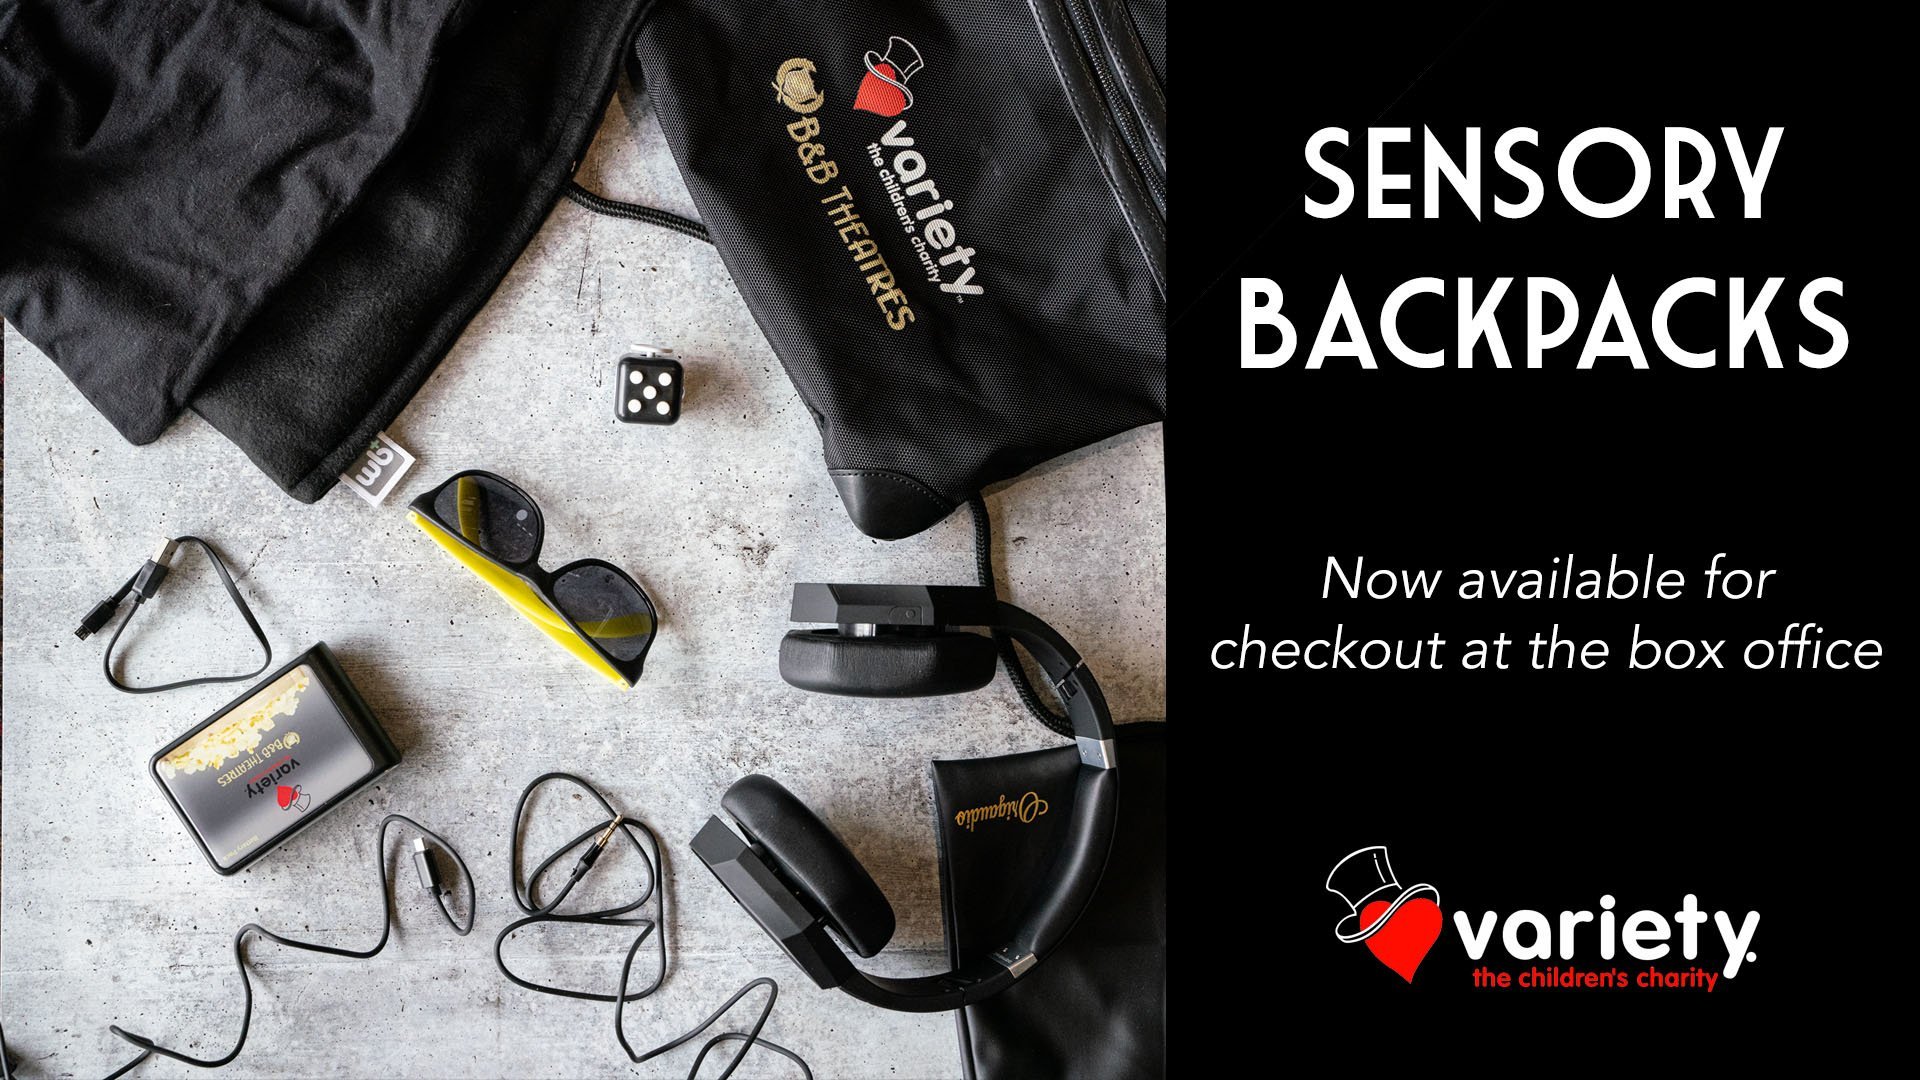 Sensory backpacks